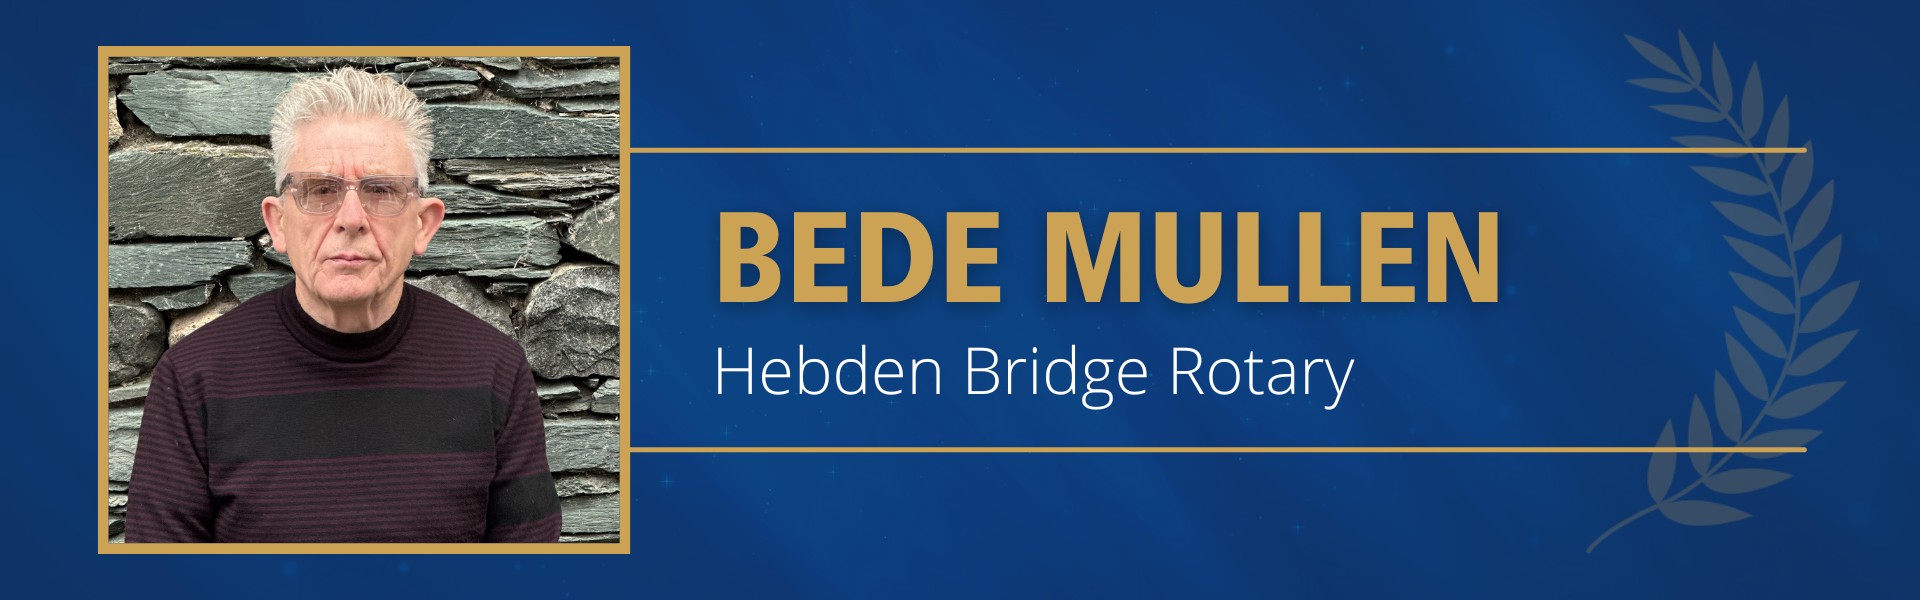 Bede Mullen Hebden Bridge Rotary